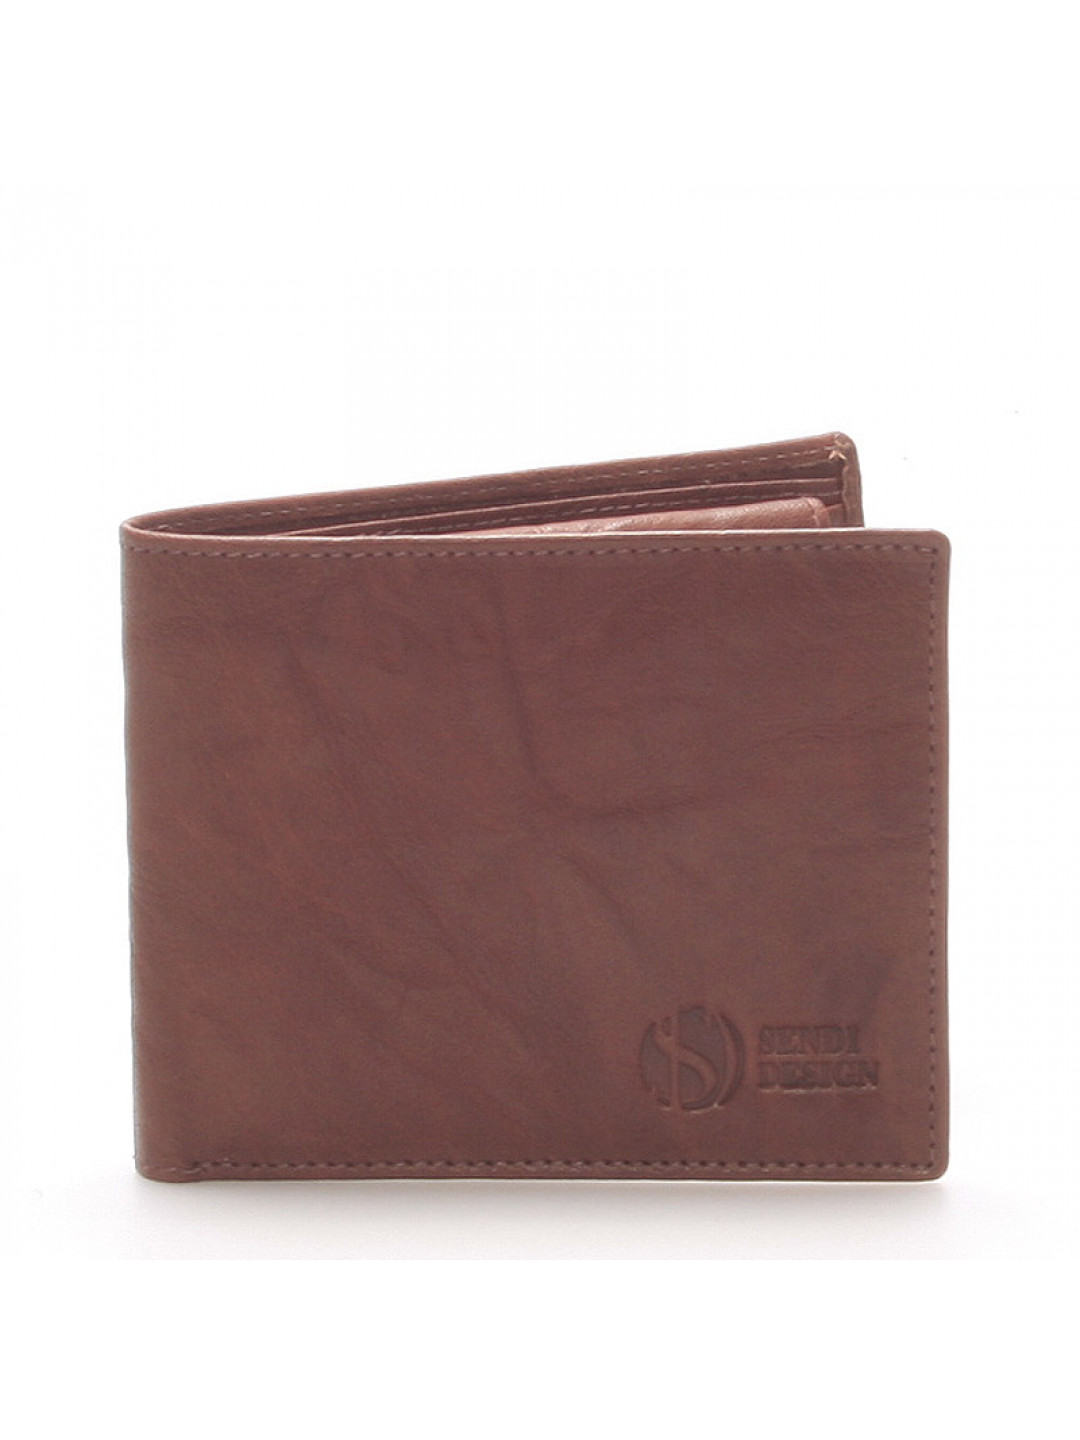 Elegantní kožená hnědá peněženka – Sendi Design 46